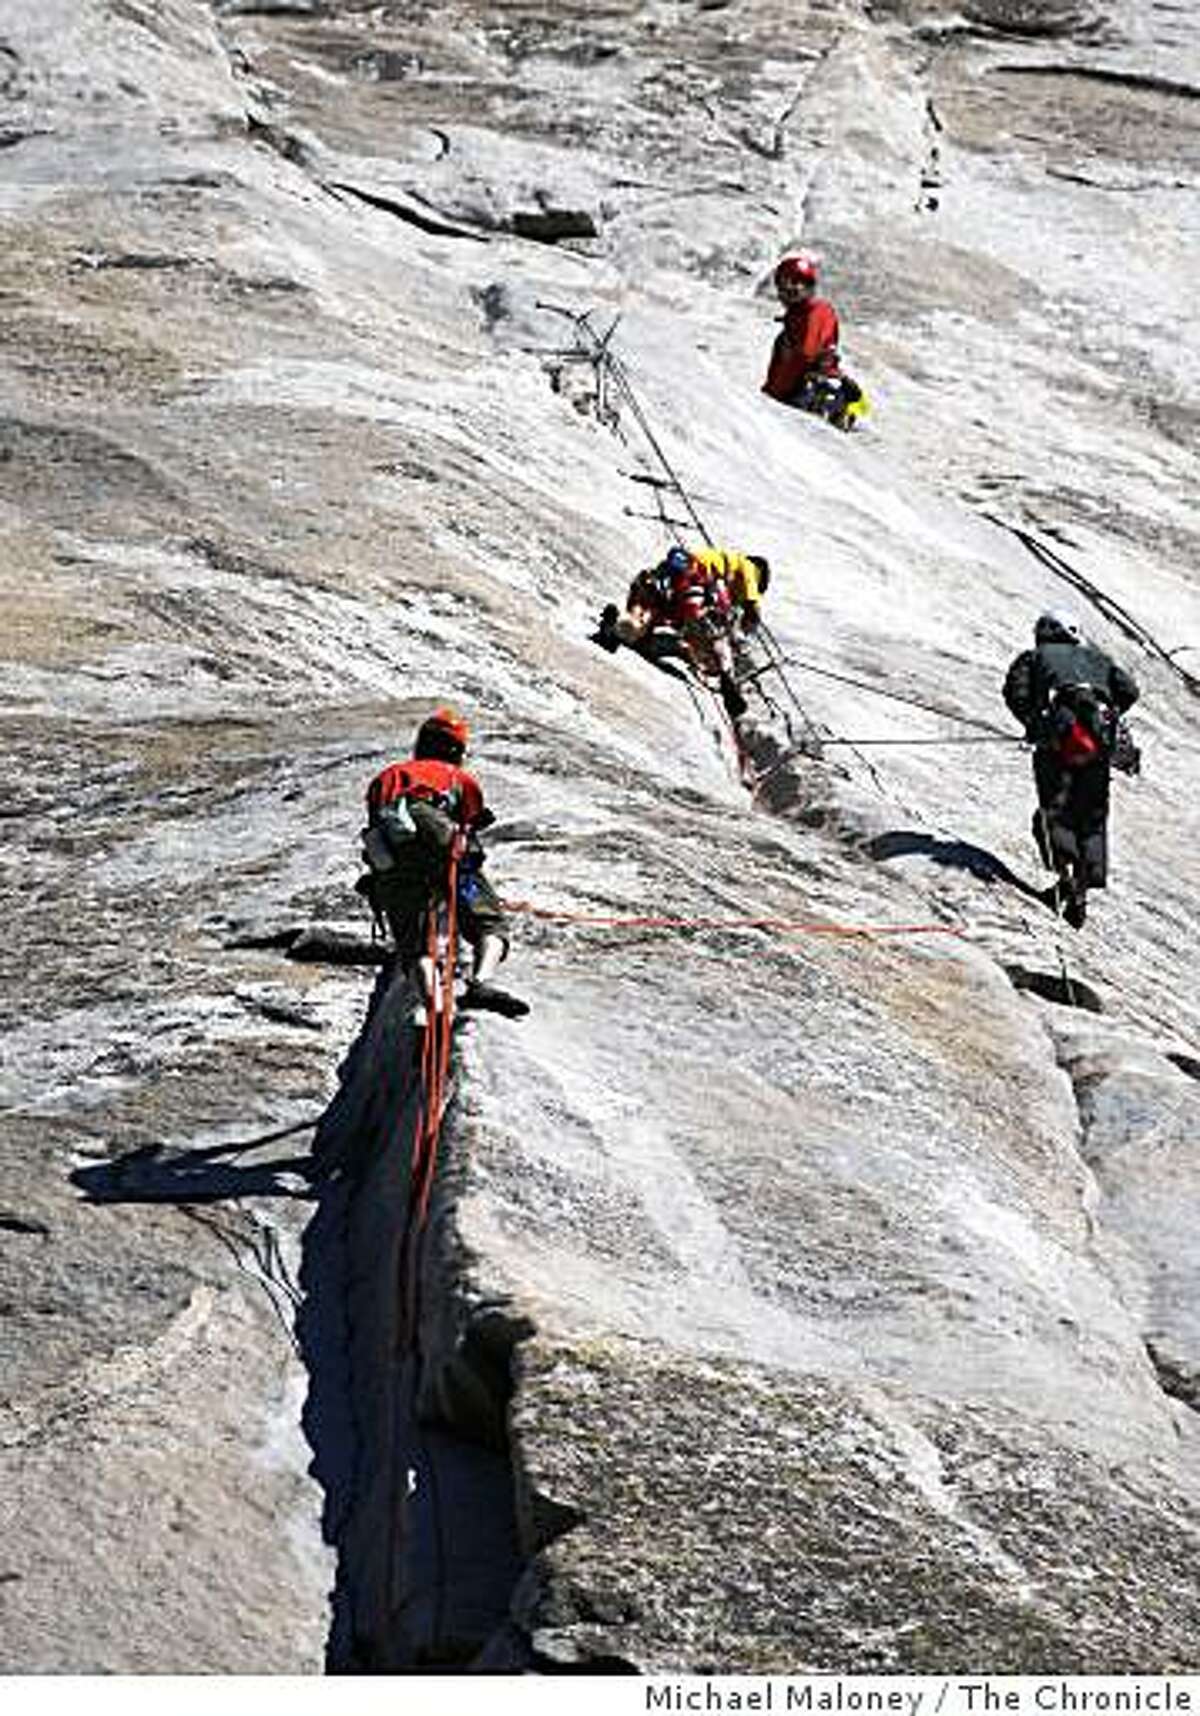 El Capitan climber dies in freak fall